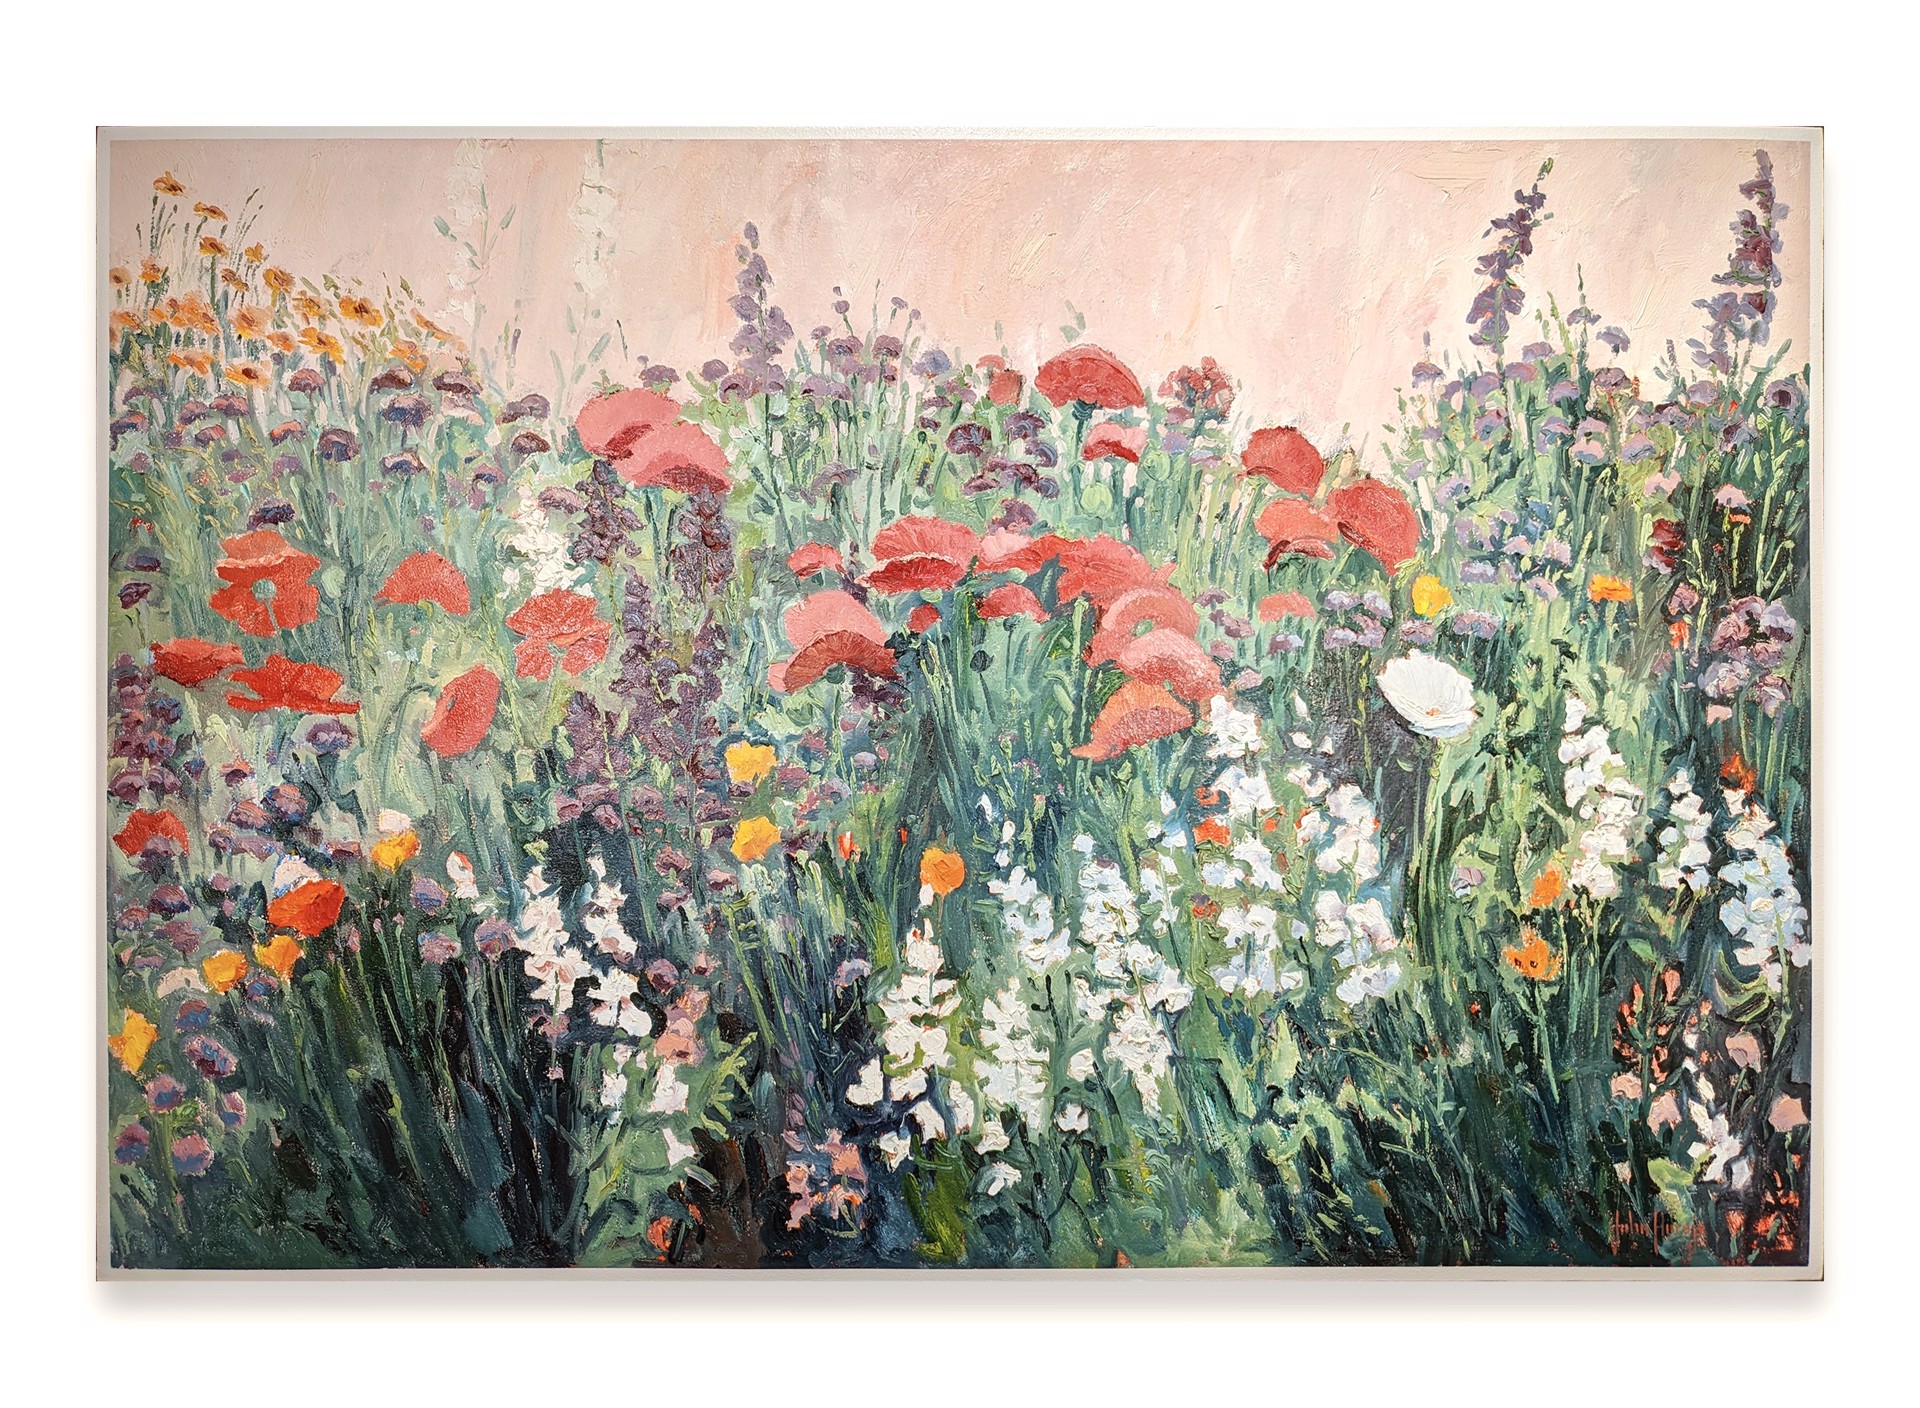 Summer's Wildflowers by John Horejs